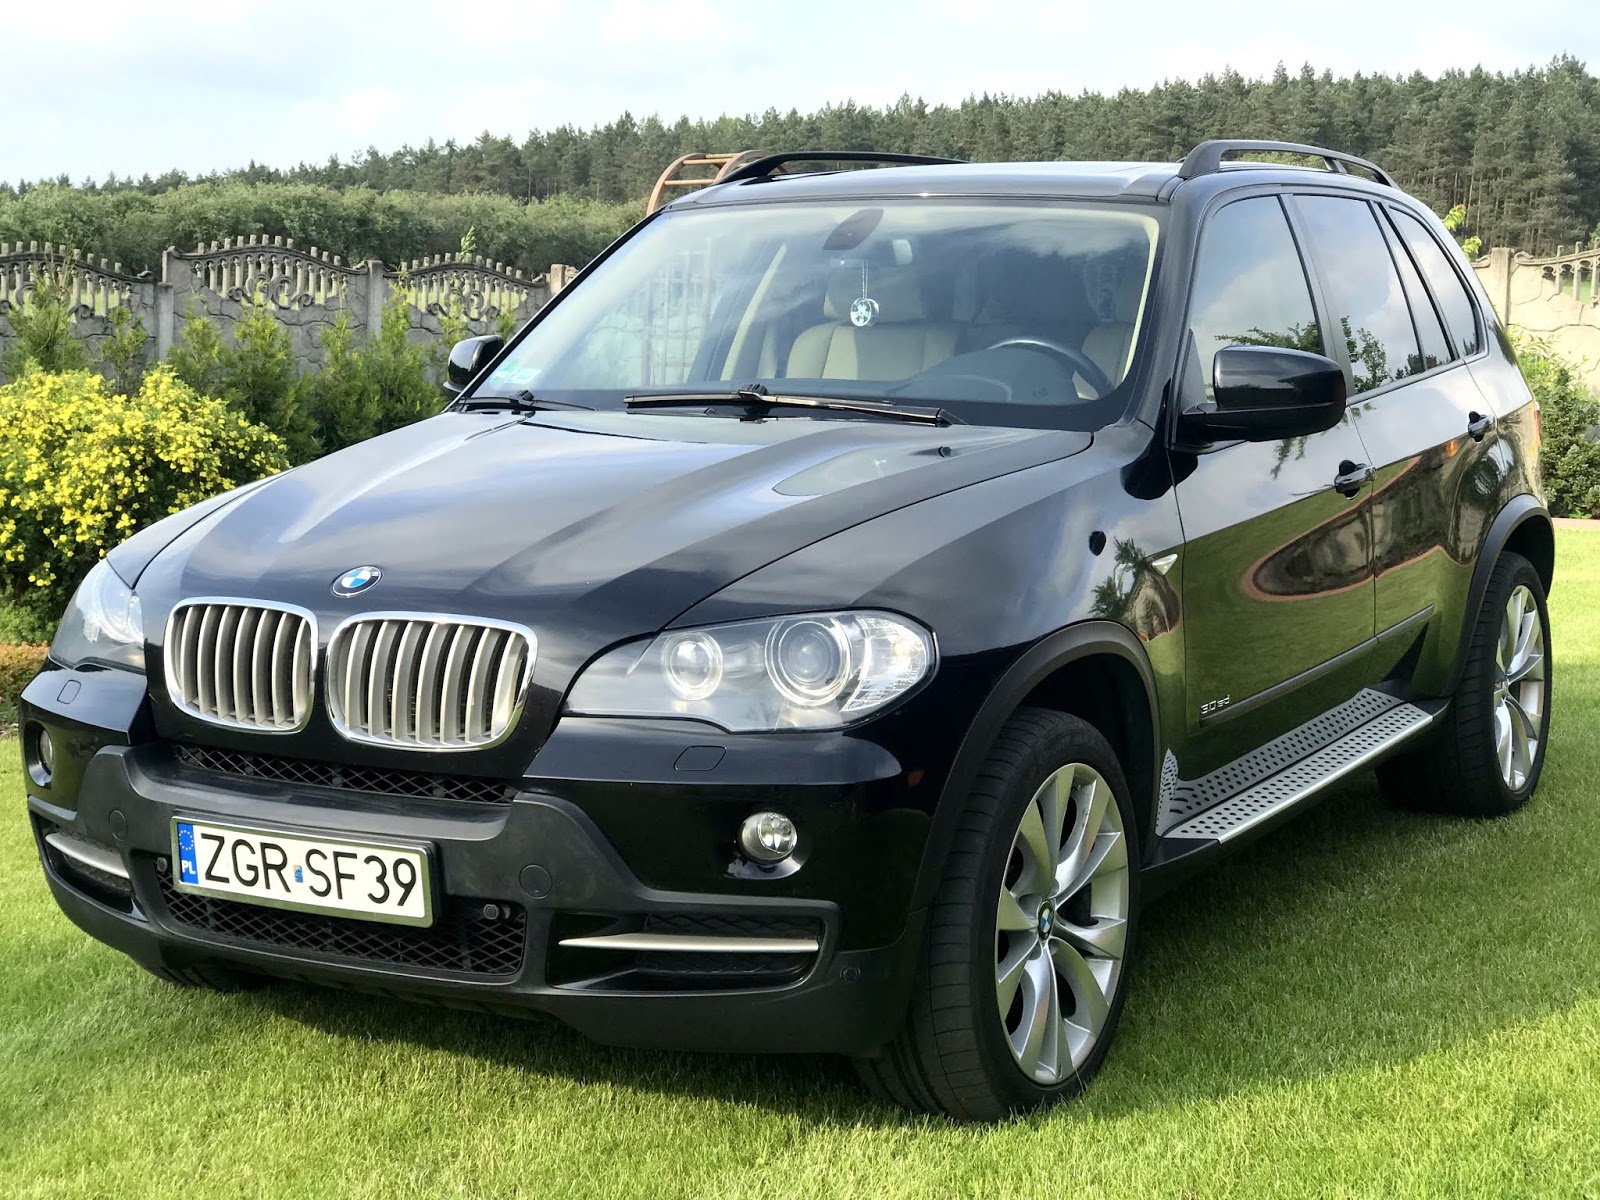 Sprzedam samochód marki BMW x5 [foto] chojna24.pl